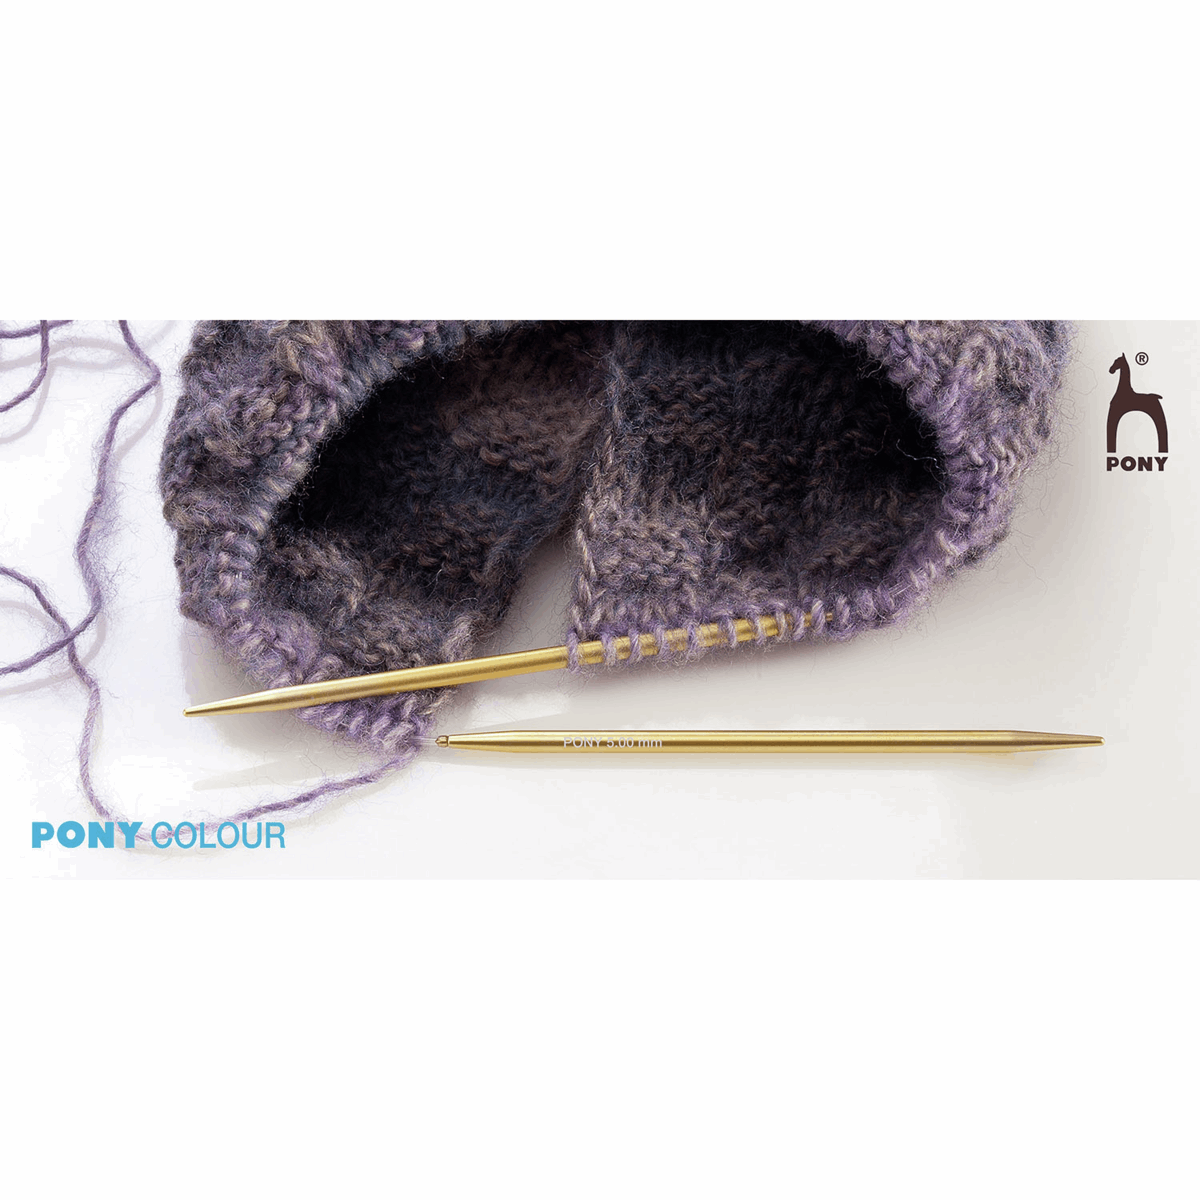 Pony Circular Knitting Needle 5mm x 80cm